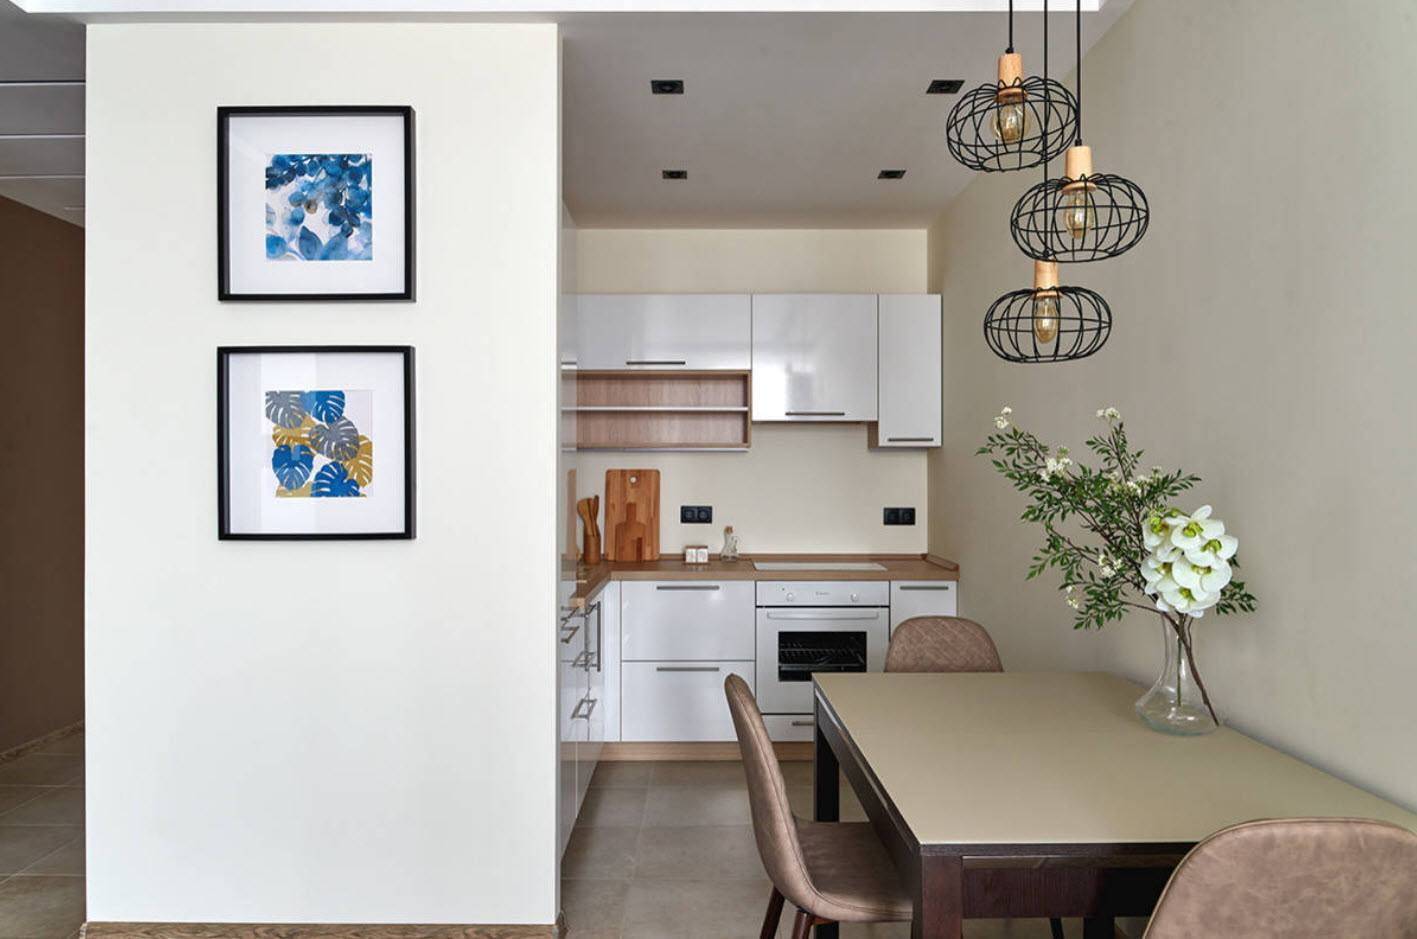 Кухни без верхних шкафов – фото дизайна реальных кухонь без навесных шкафчиков